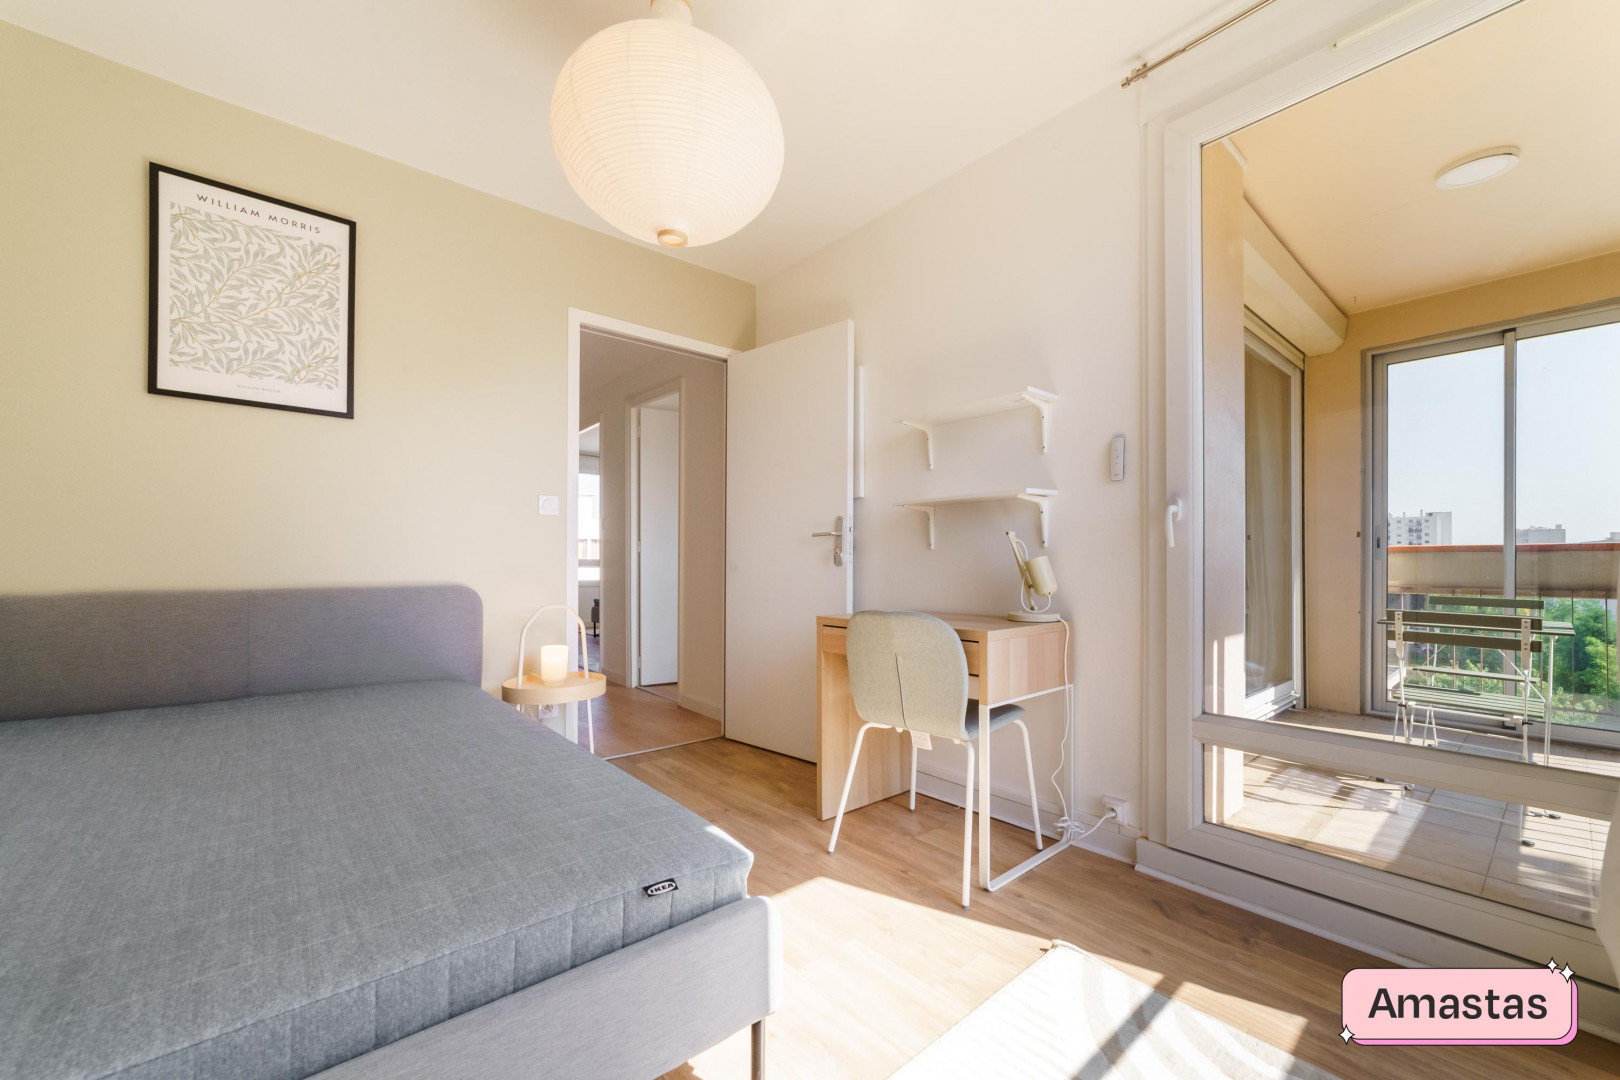 
                                                Colocation
                                                 2 chambres disponibles dans cet appartement entièrement meublé et rénové à Vénissieux